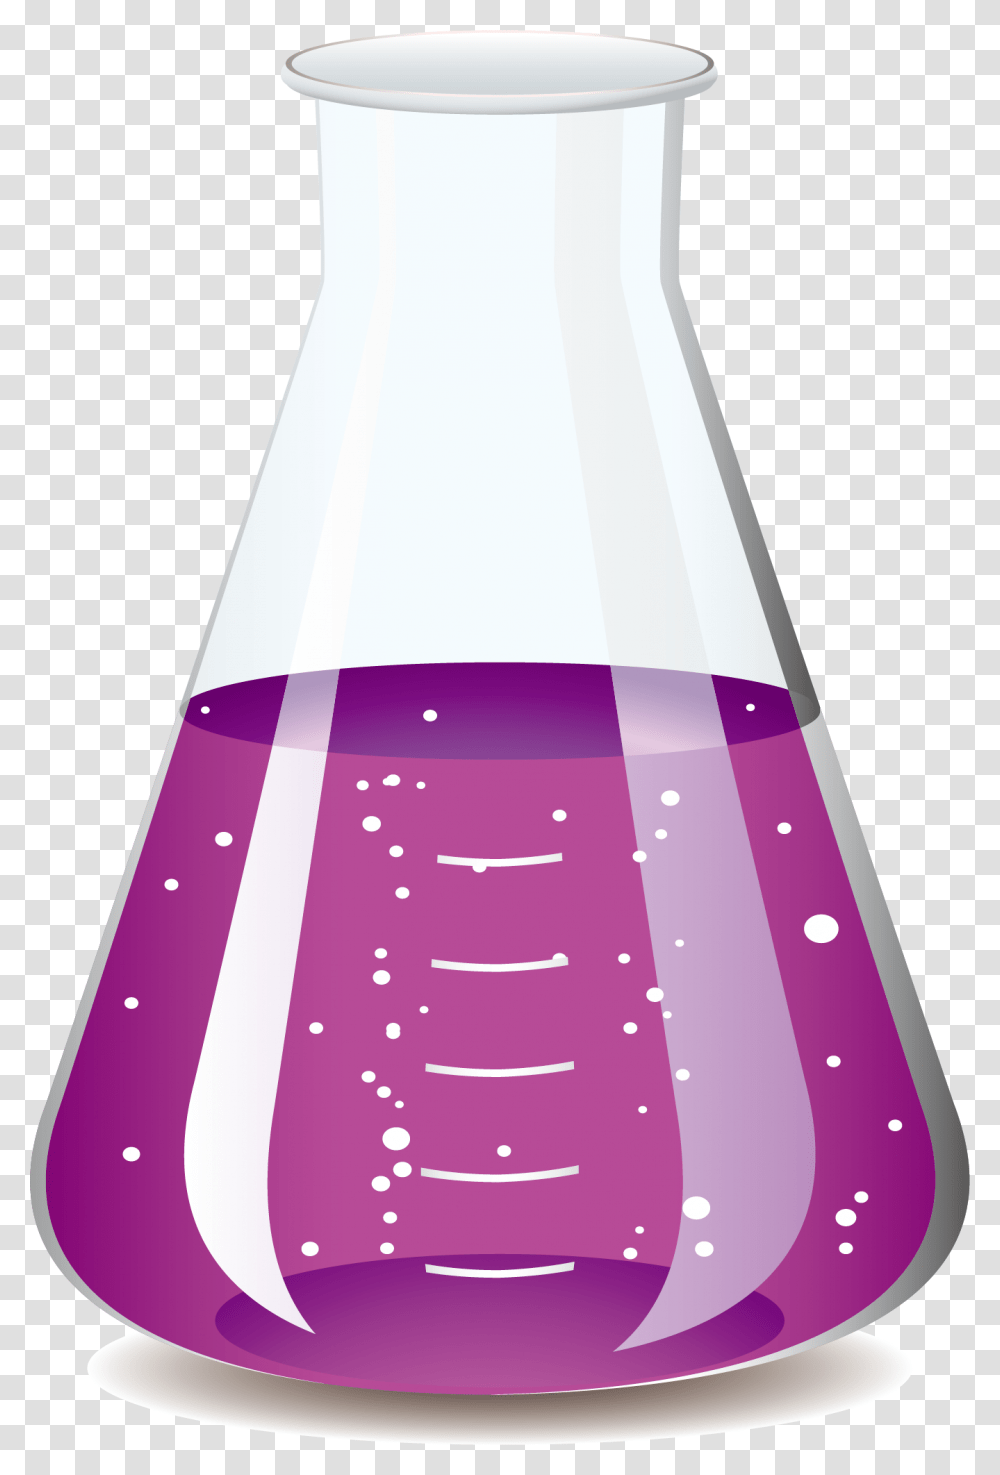 Science Flask Test Tubes Image Background, Soda, Beverage, Drink, Bottle Transparent Png